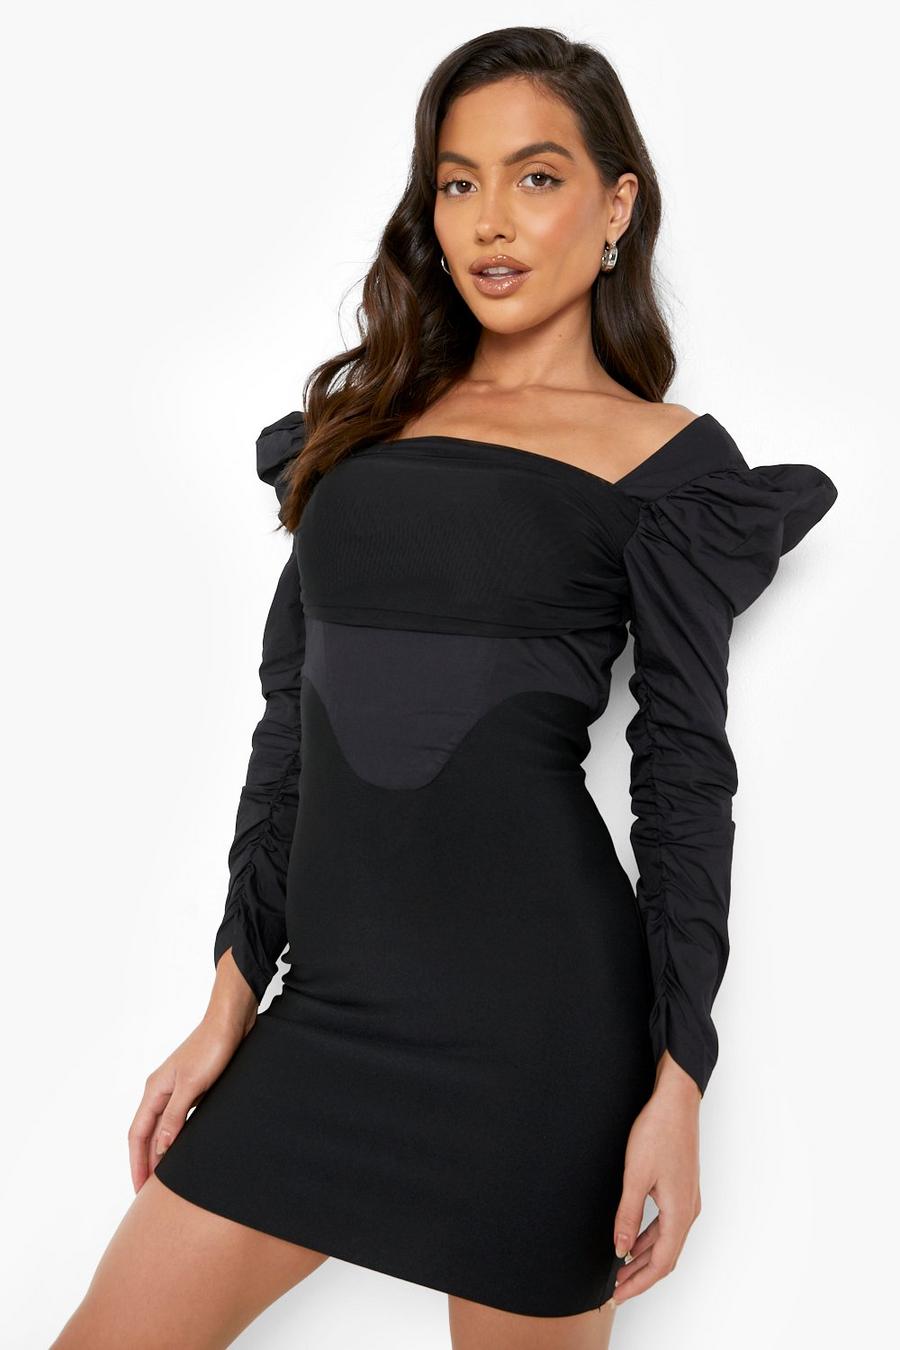 שחור black שמלת בנדג' צמודה פרימיום בסגנון מחוך